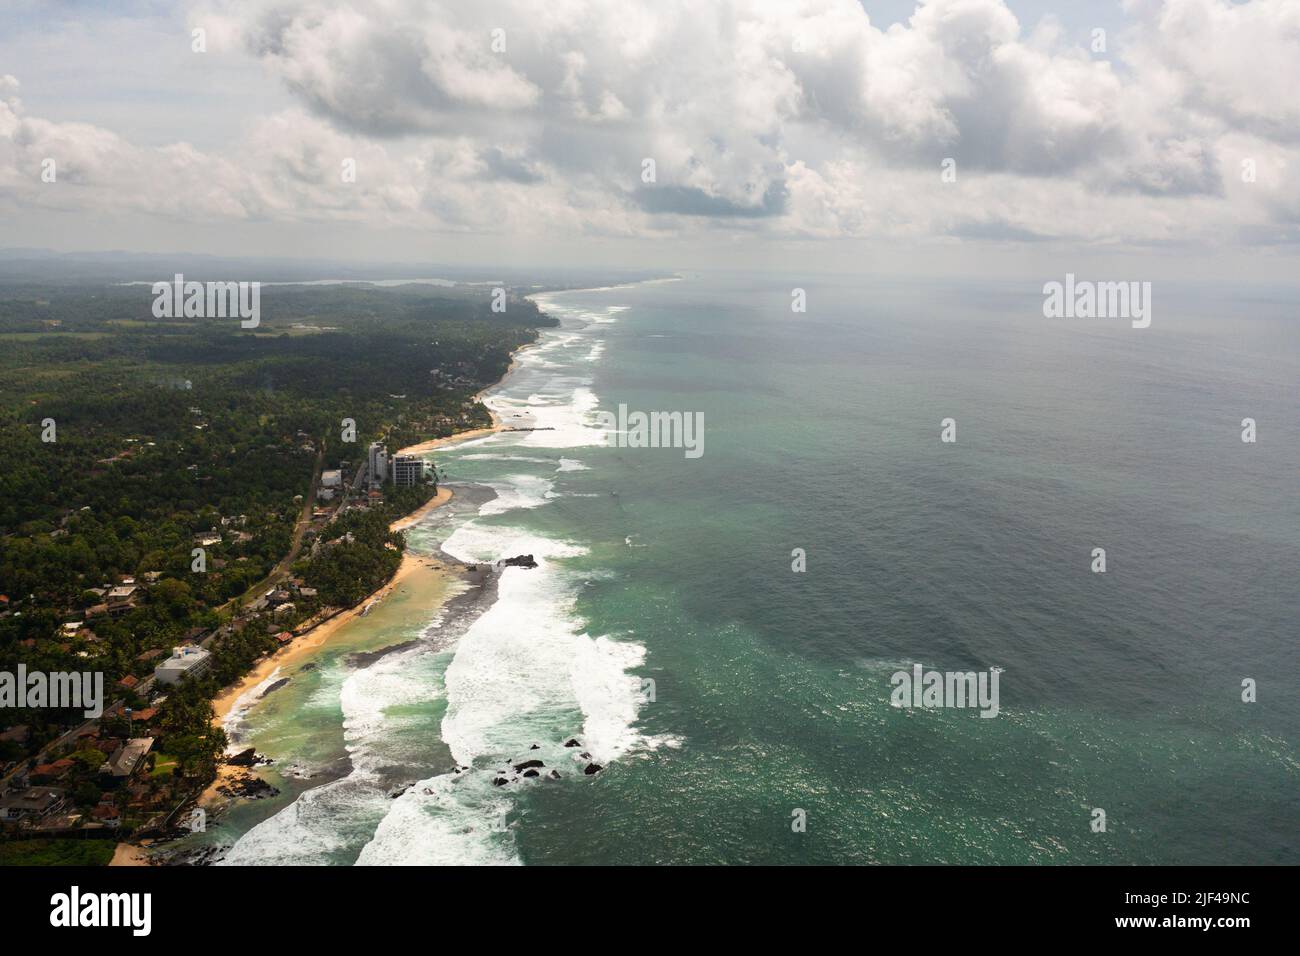 La costa con spiagge e alberghi. Località turistica. Unawatuna, Sri Lanka. Foto Stock